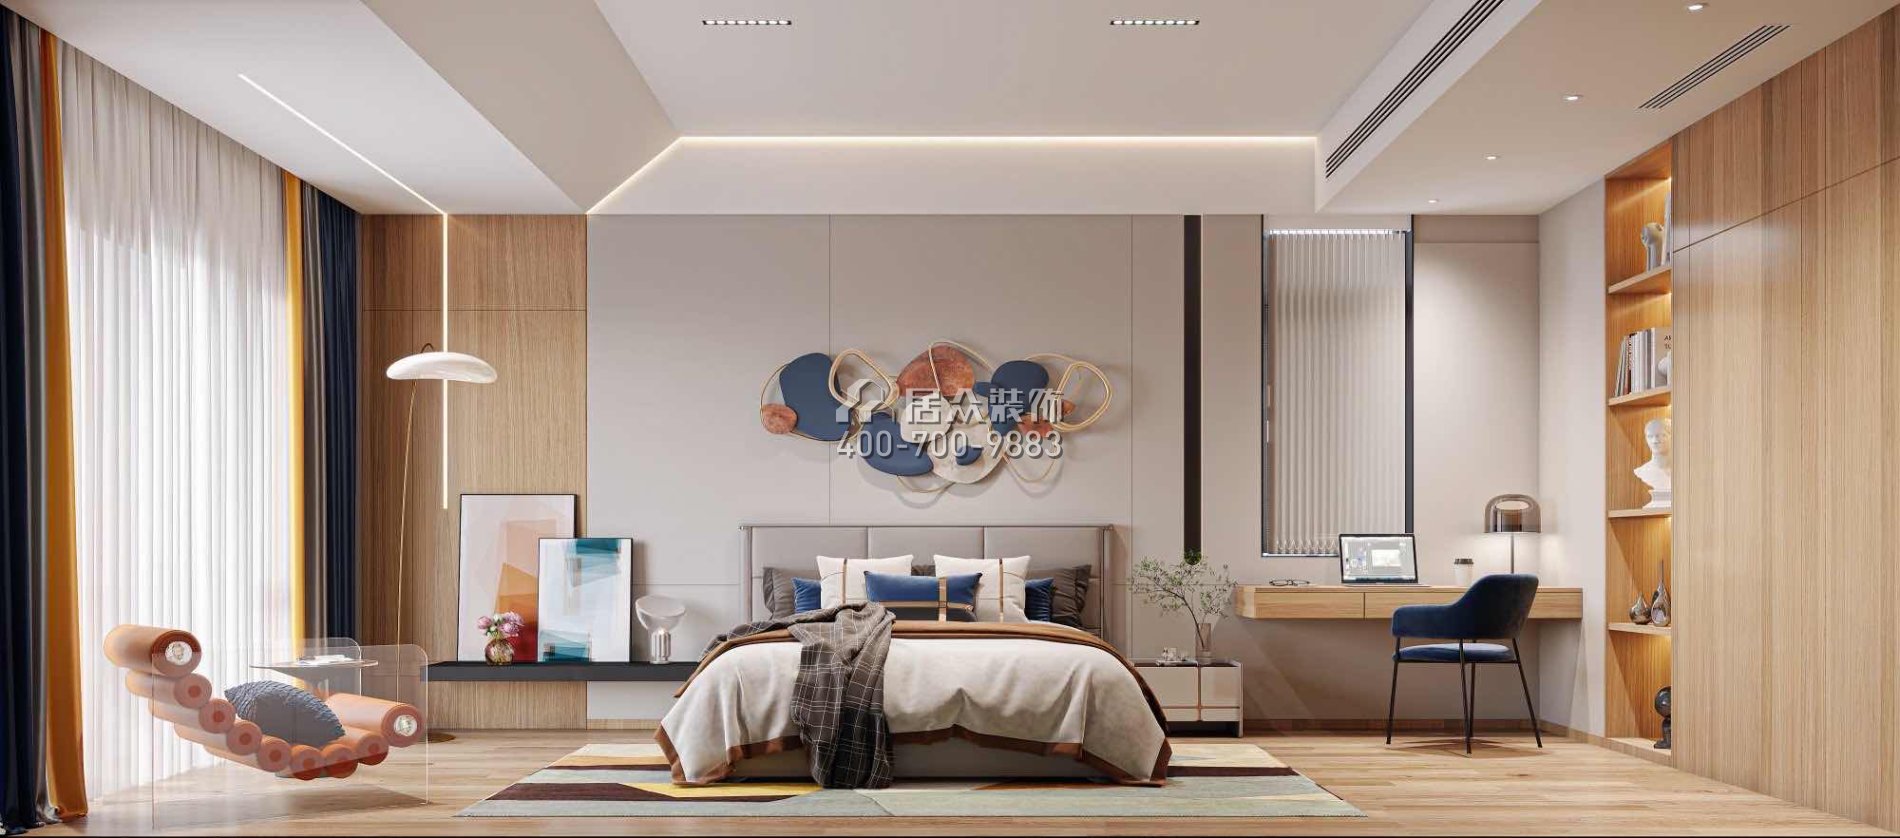 翠湖香山480平方米现代简约风格别墅户型卧室装修效果图